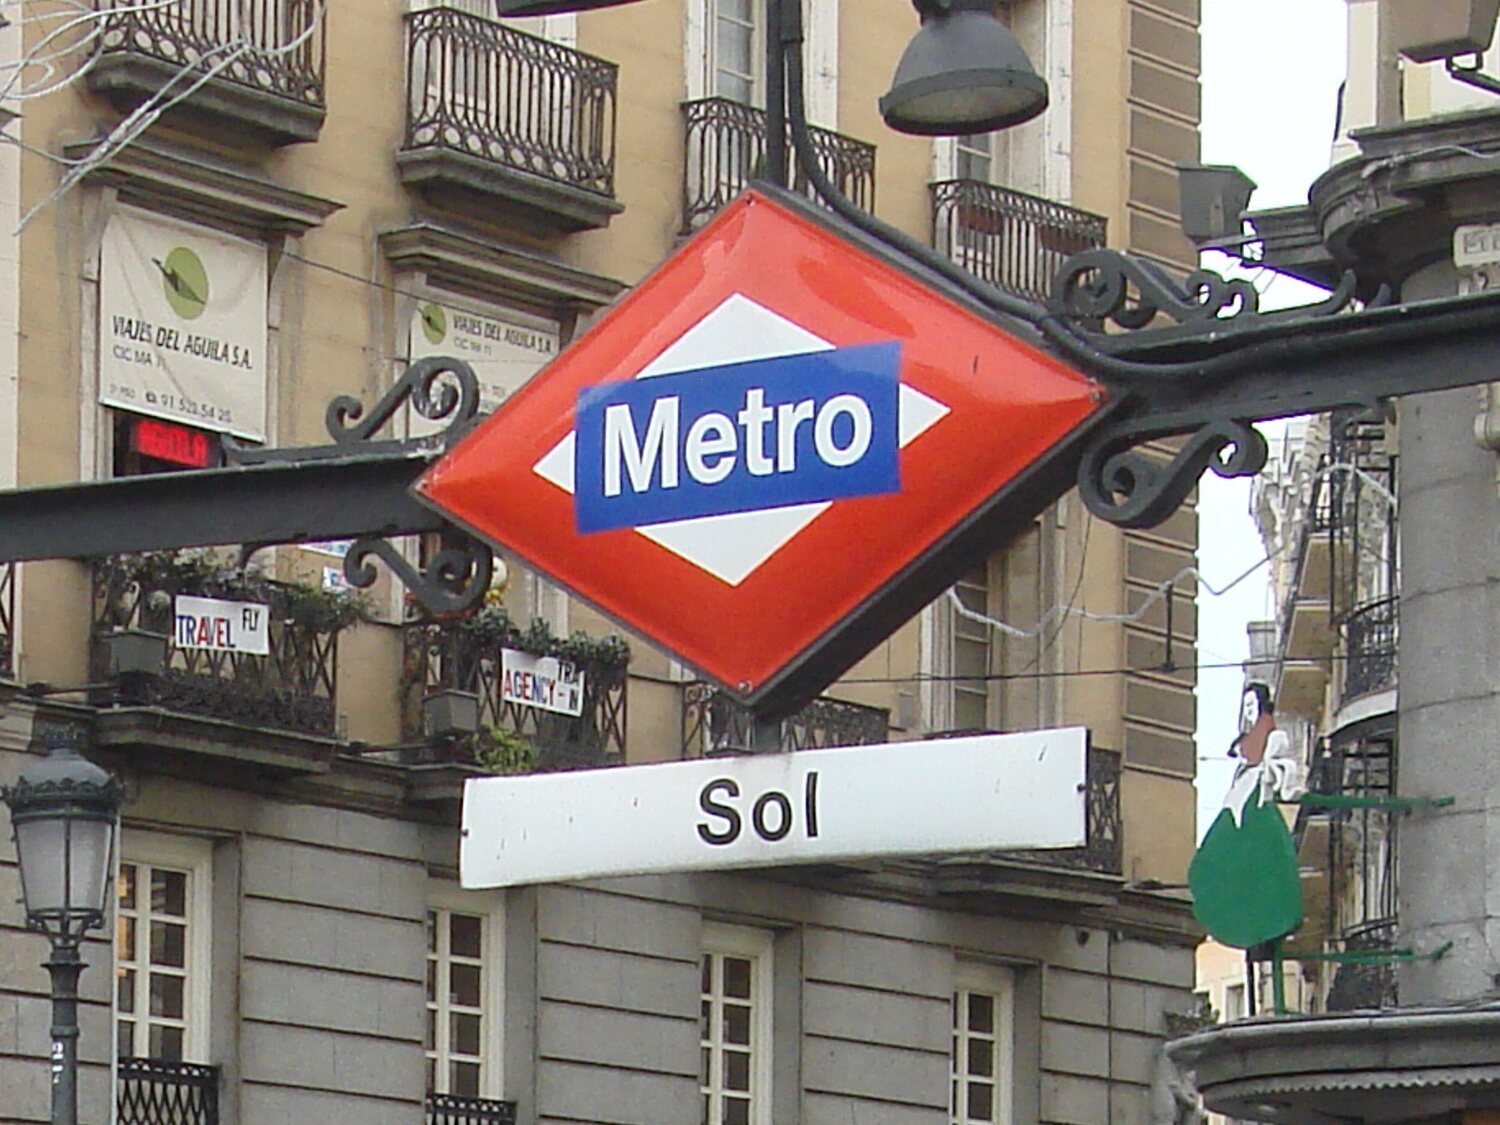 Llega el pago con tarjeta en los tornos del Metro de Madrid: todo lo que necesitas saber